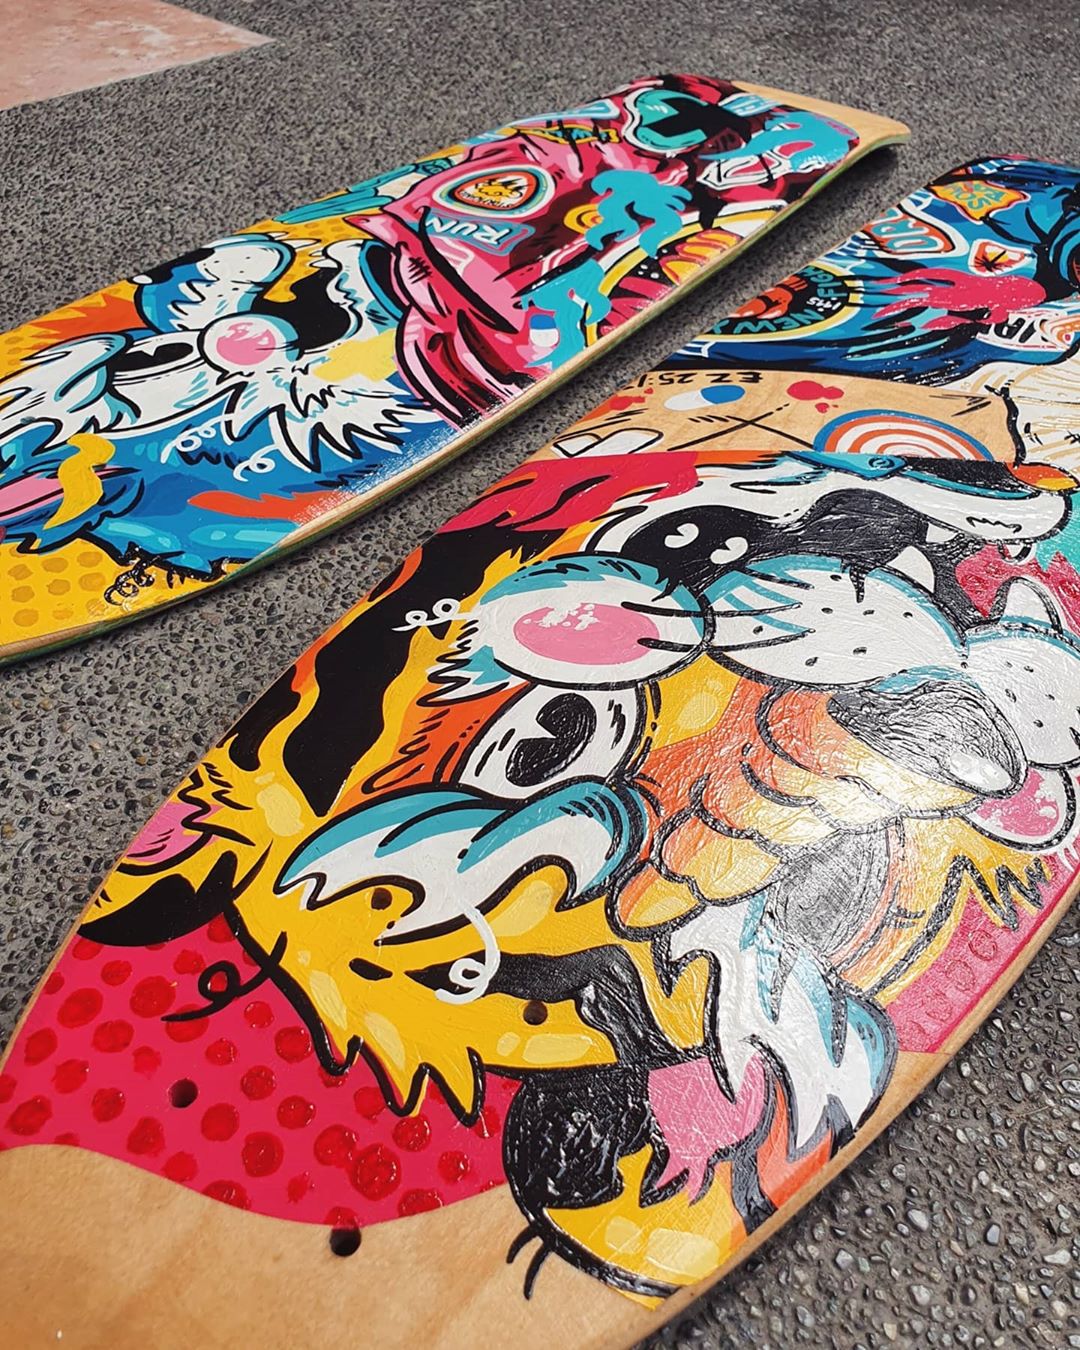 Custom Skateboards By Jappy Agoncillo 5.jpg